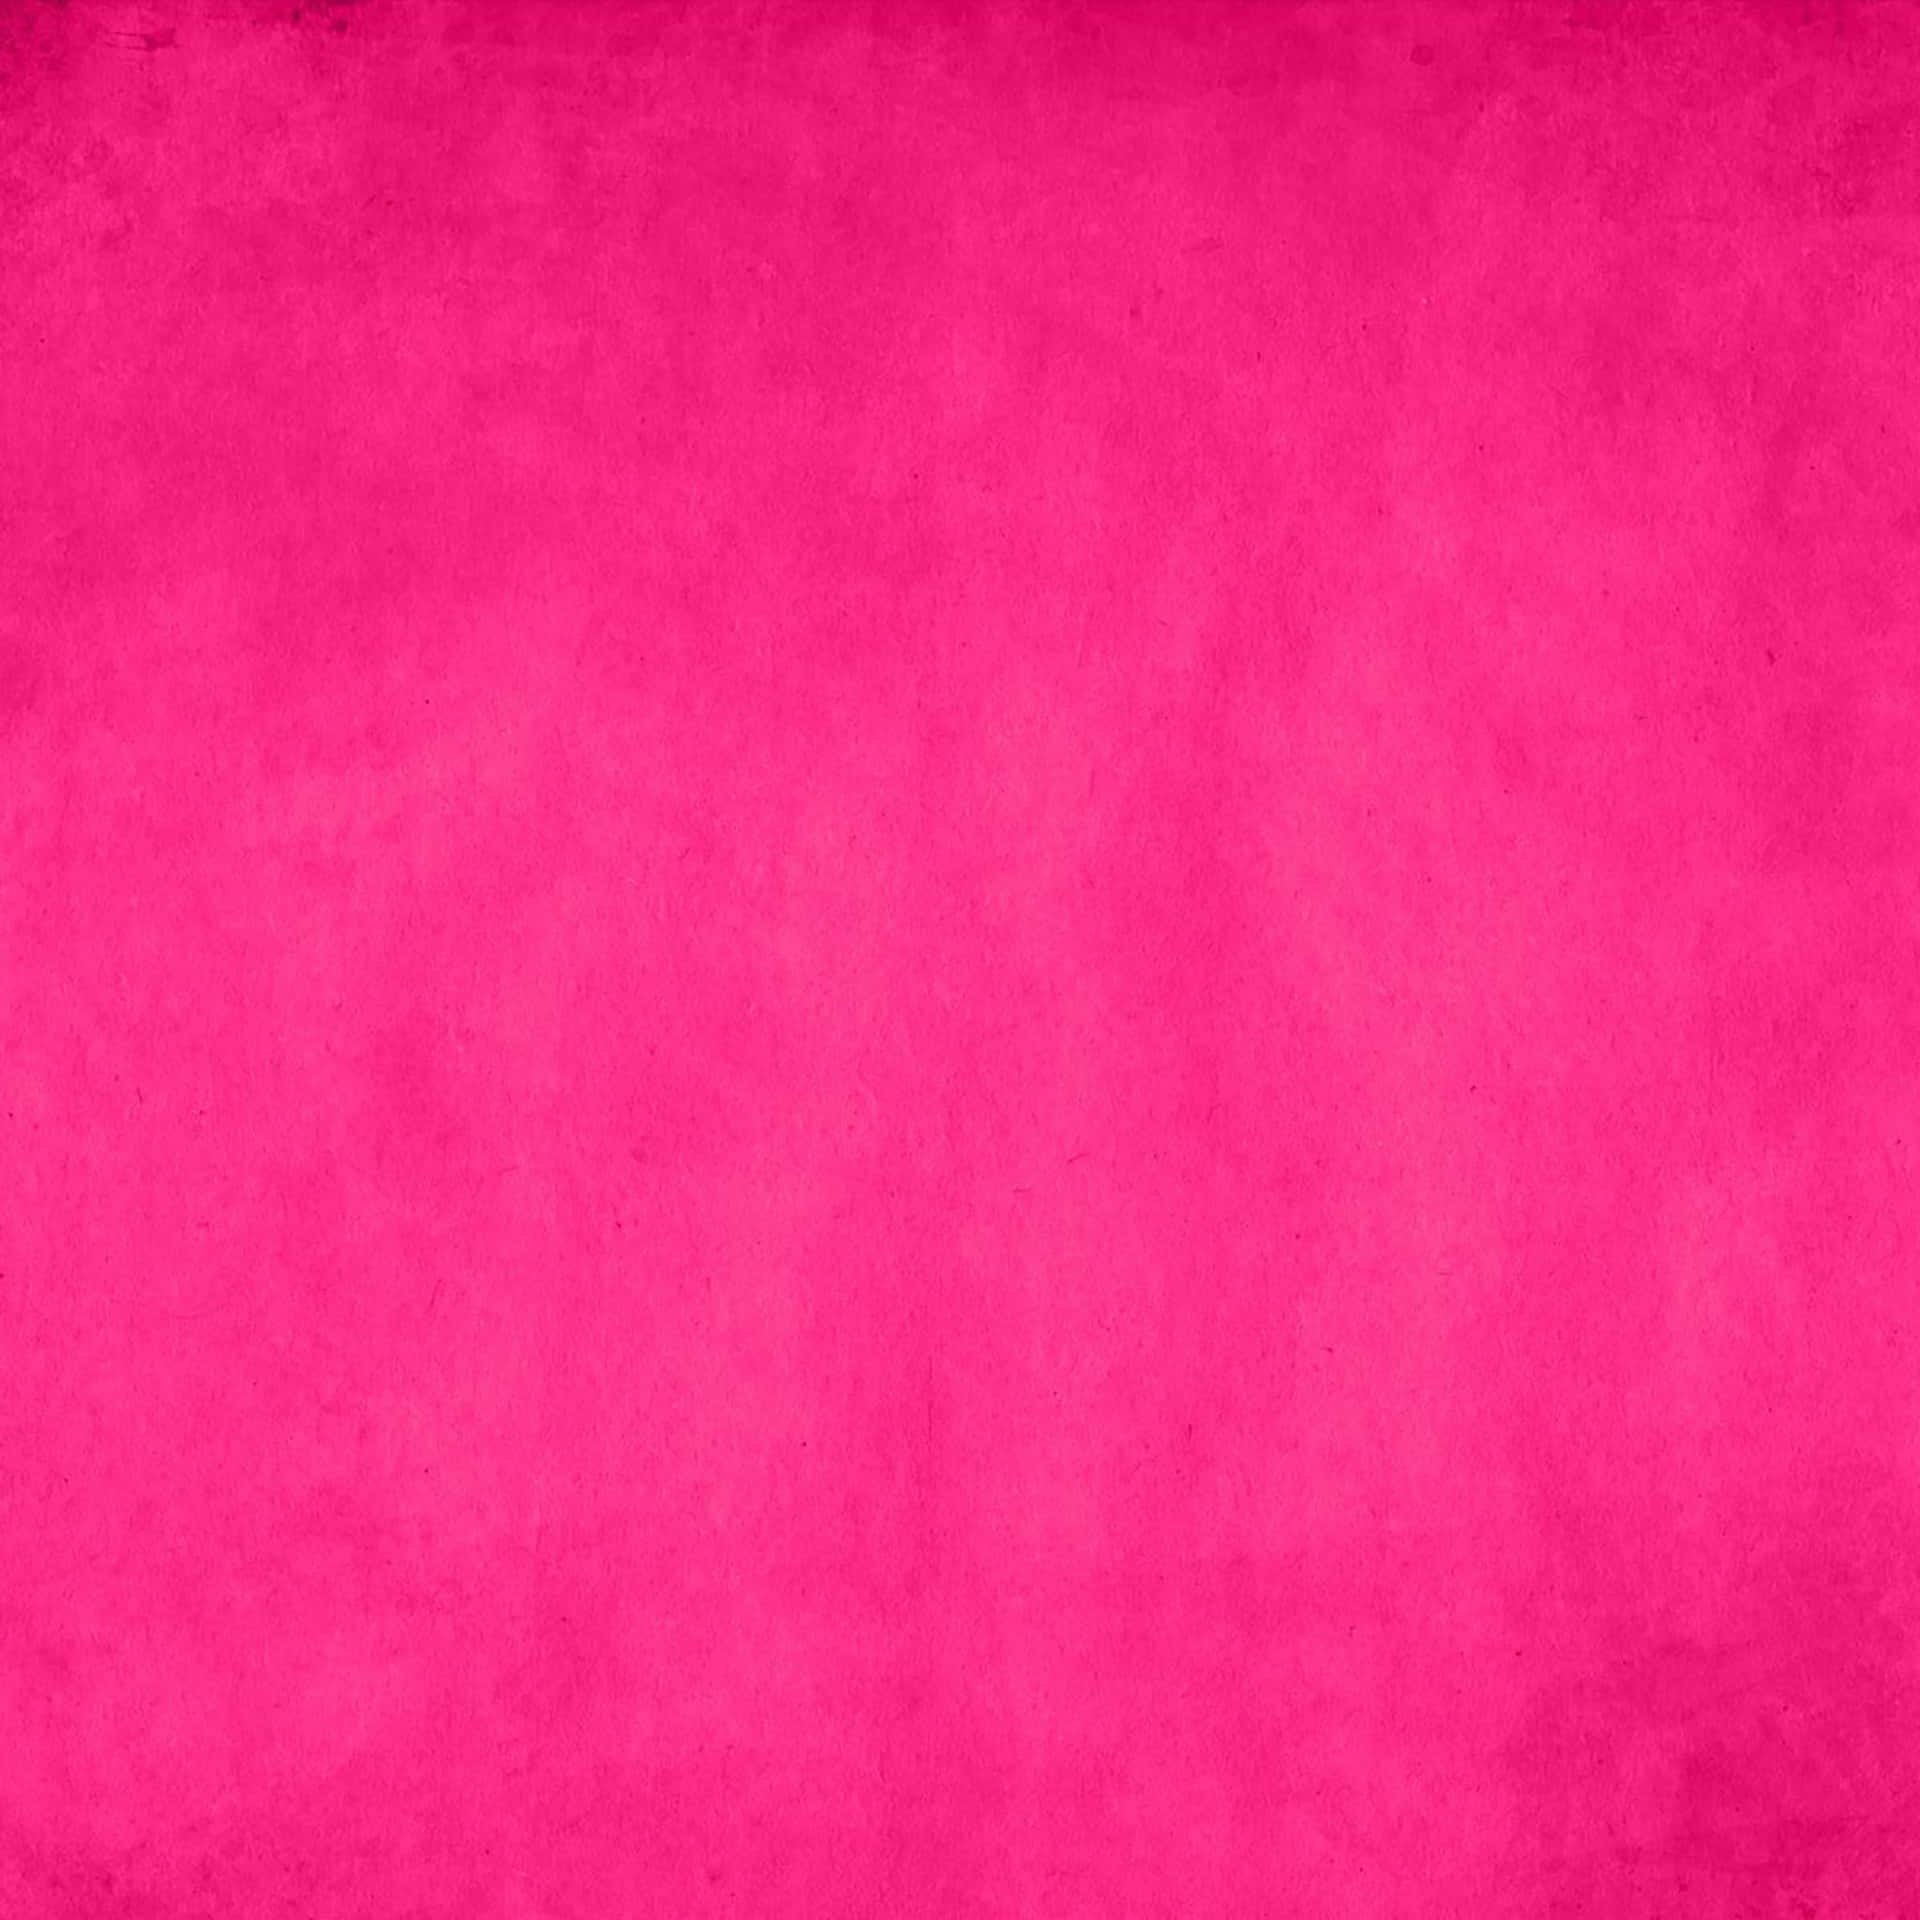 Fondode Pantalla Rosa Grunge Con Un Color Rosa Fondo de pantalla